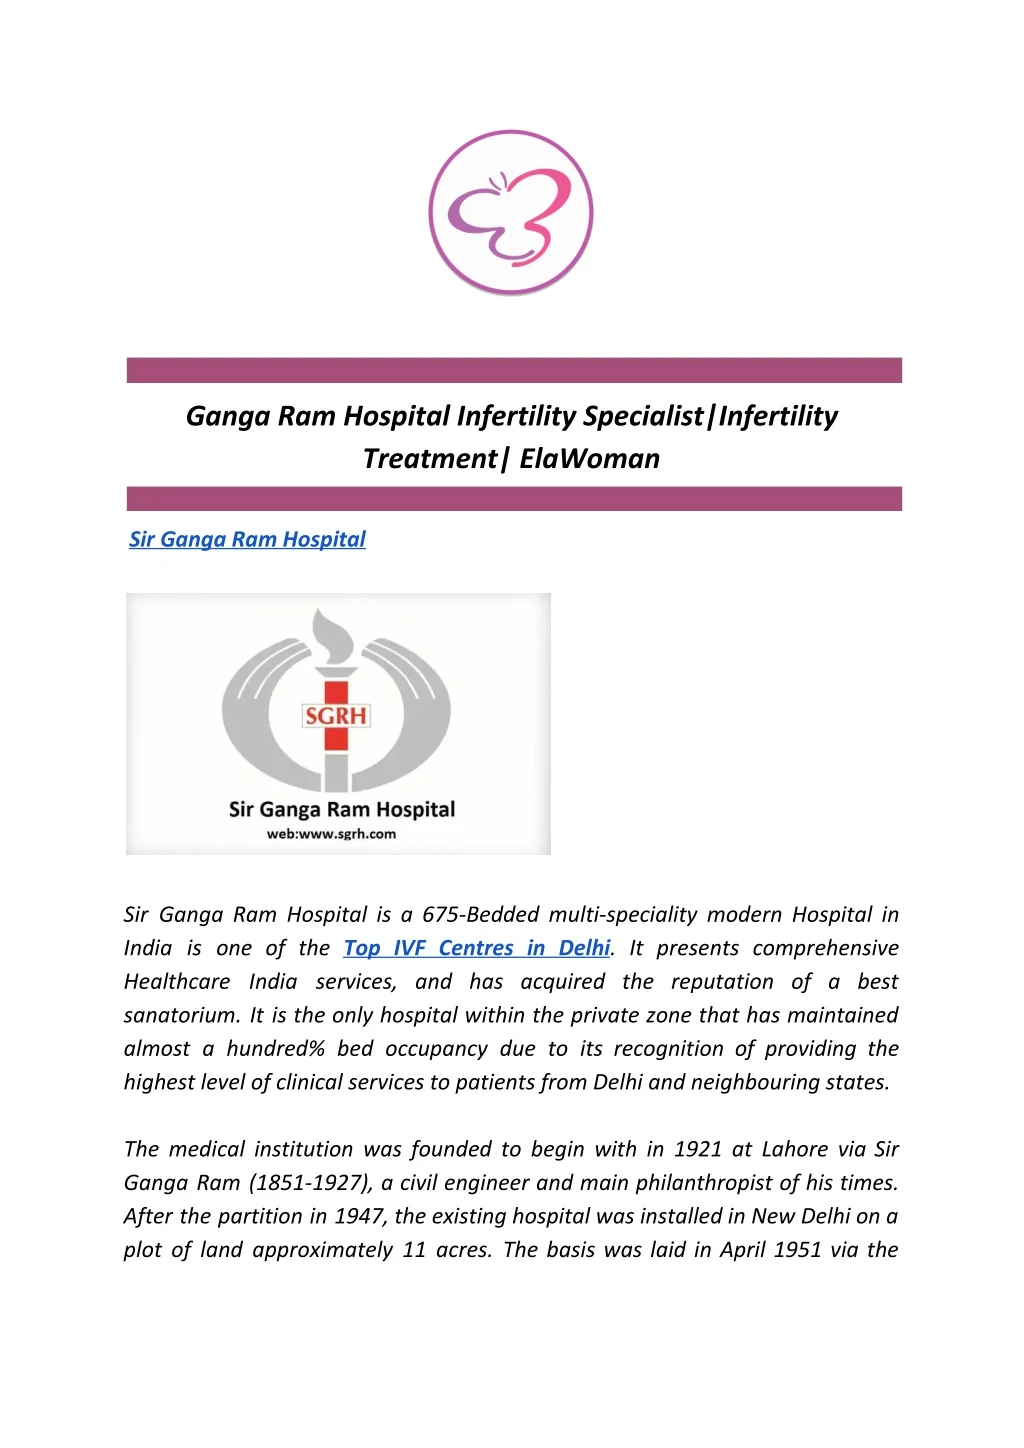 ganga ram hospital infertility specialist